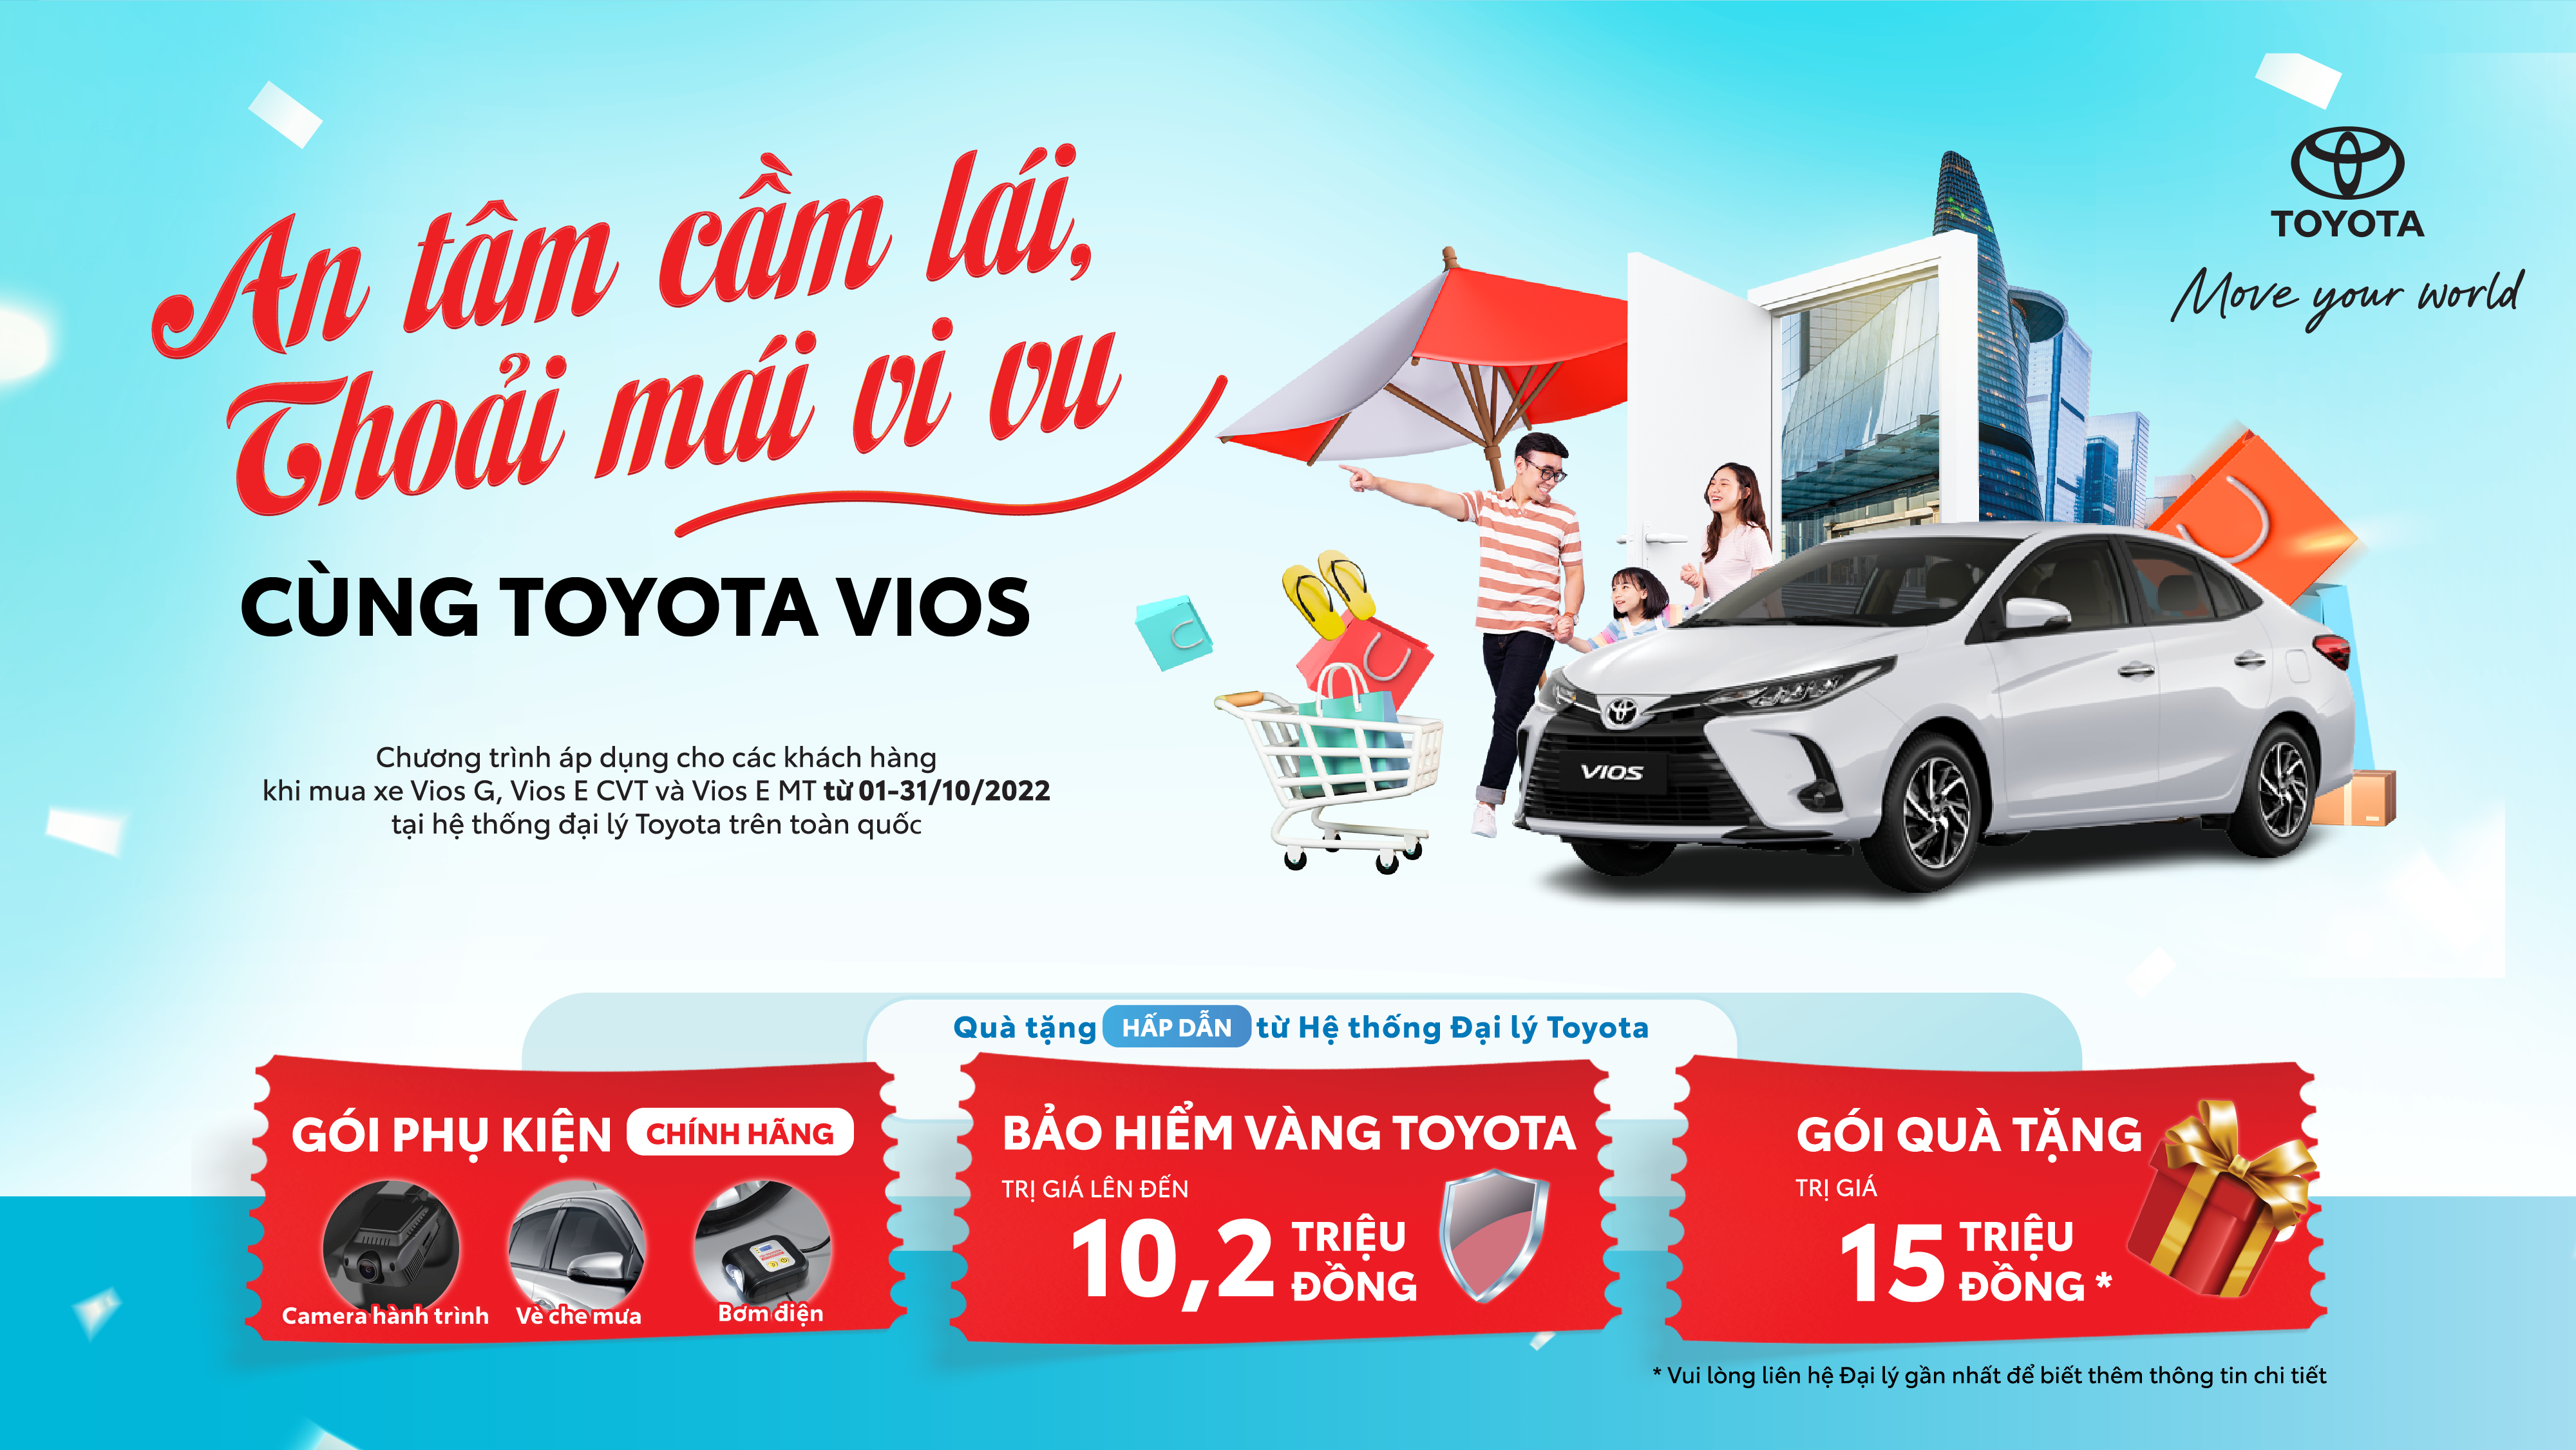 Hệ thống đại lý Toyota trên toàn quốc tiếp tục triển khai chương trình khuyến mại – “An tâm cầm lái, thoải mái vi vu cùng Toyota Vios” trong tháng 10/2022